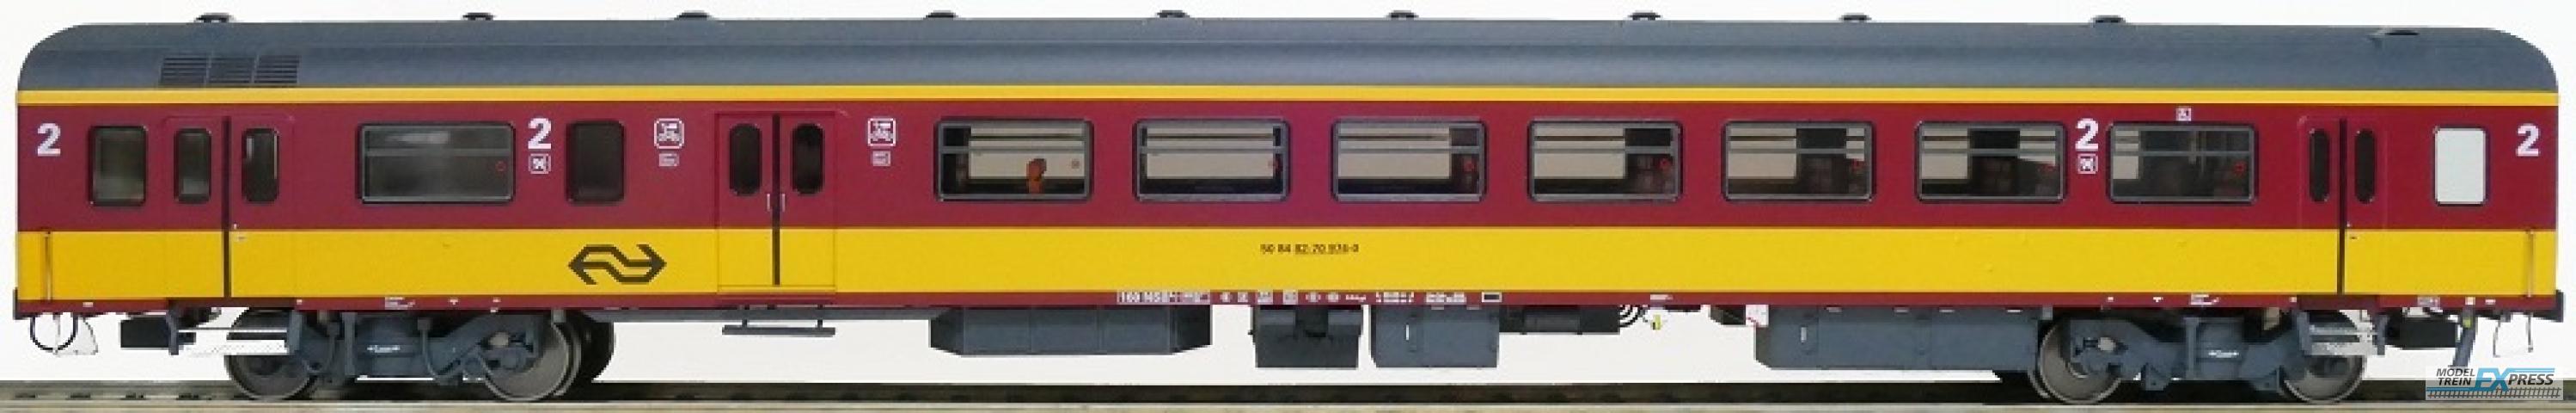 Exact-train 11081 NS ICR (Originalversion) für den Beneluxzug nach Belgien Gepäckwagen BKD ( Farbe Gelb / Rot), Ep. IV